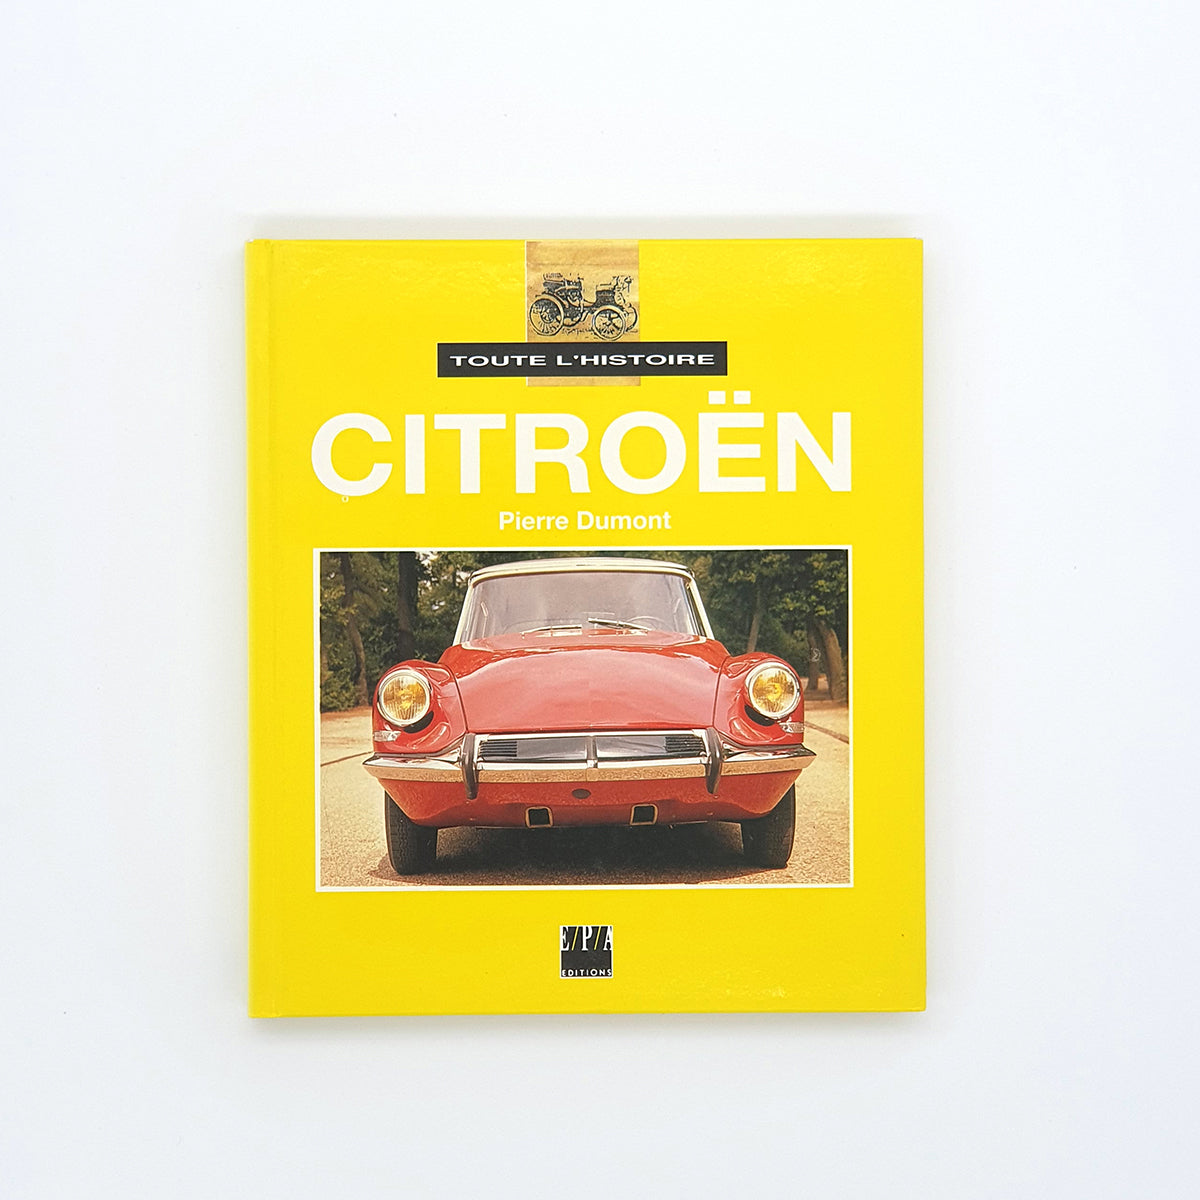 Toute l'histoire Citroën